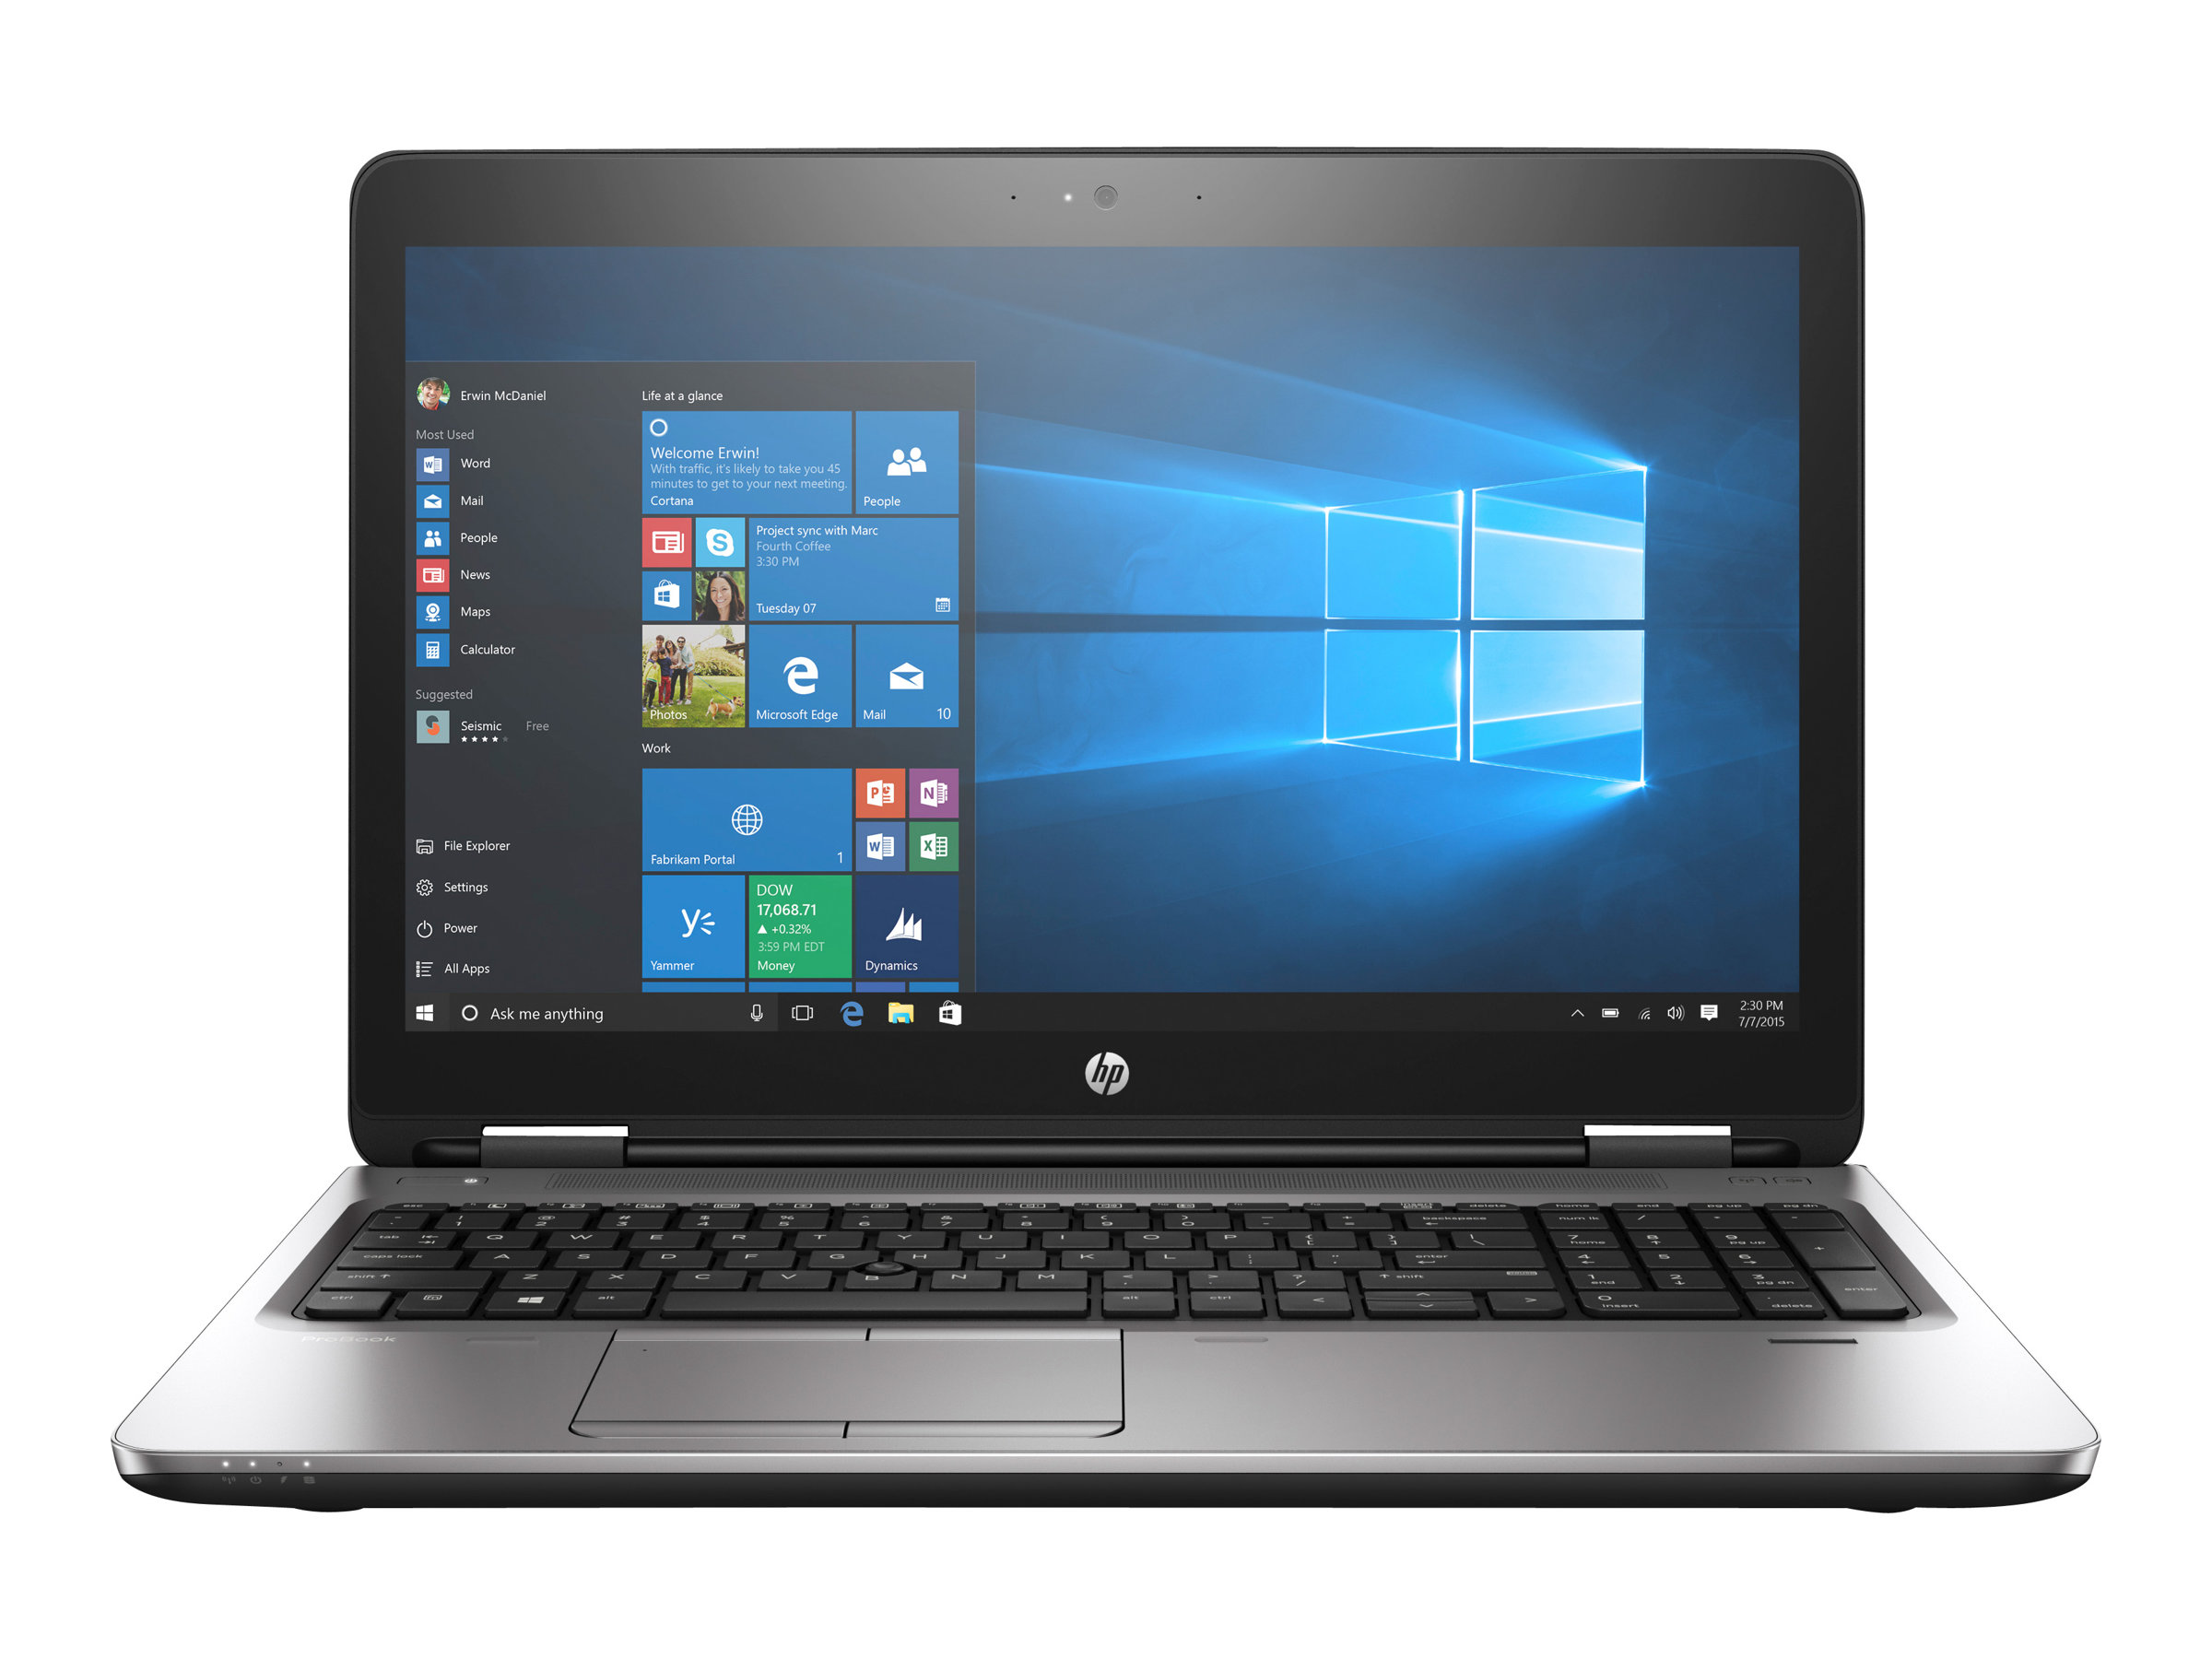 HP ProBook 655 G2 Notebook